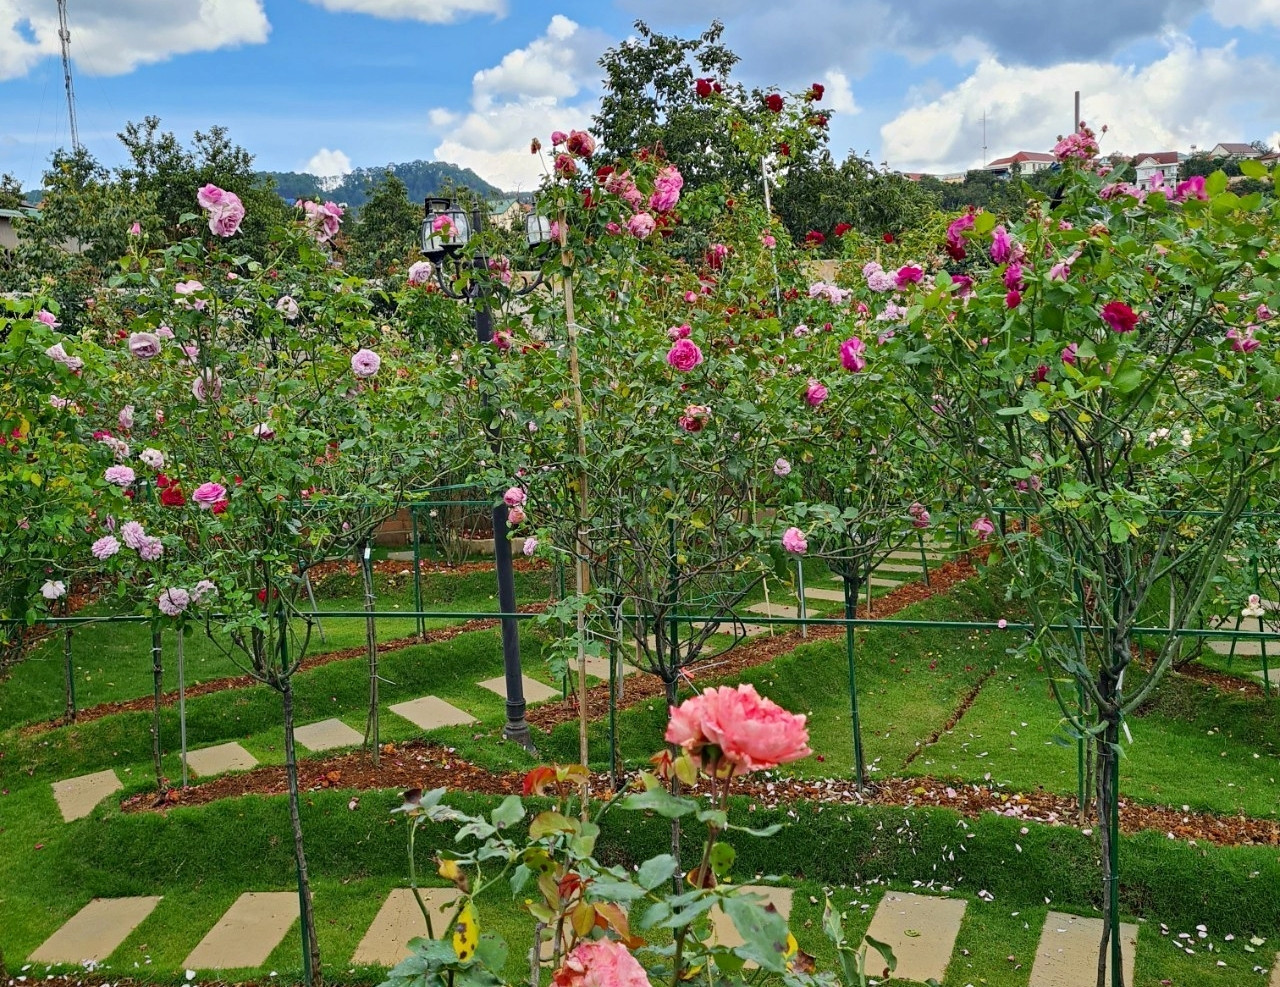 Vườn hoa hồng 4 tỷ đồng của người phụ nữ từng 34 năm đi ở trọ